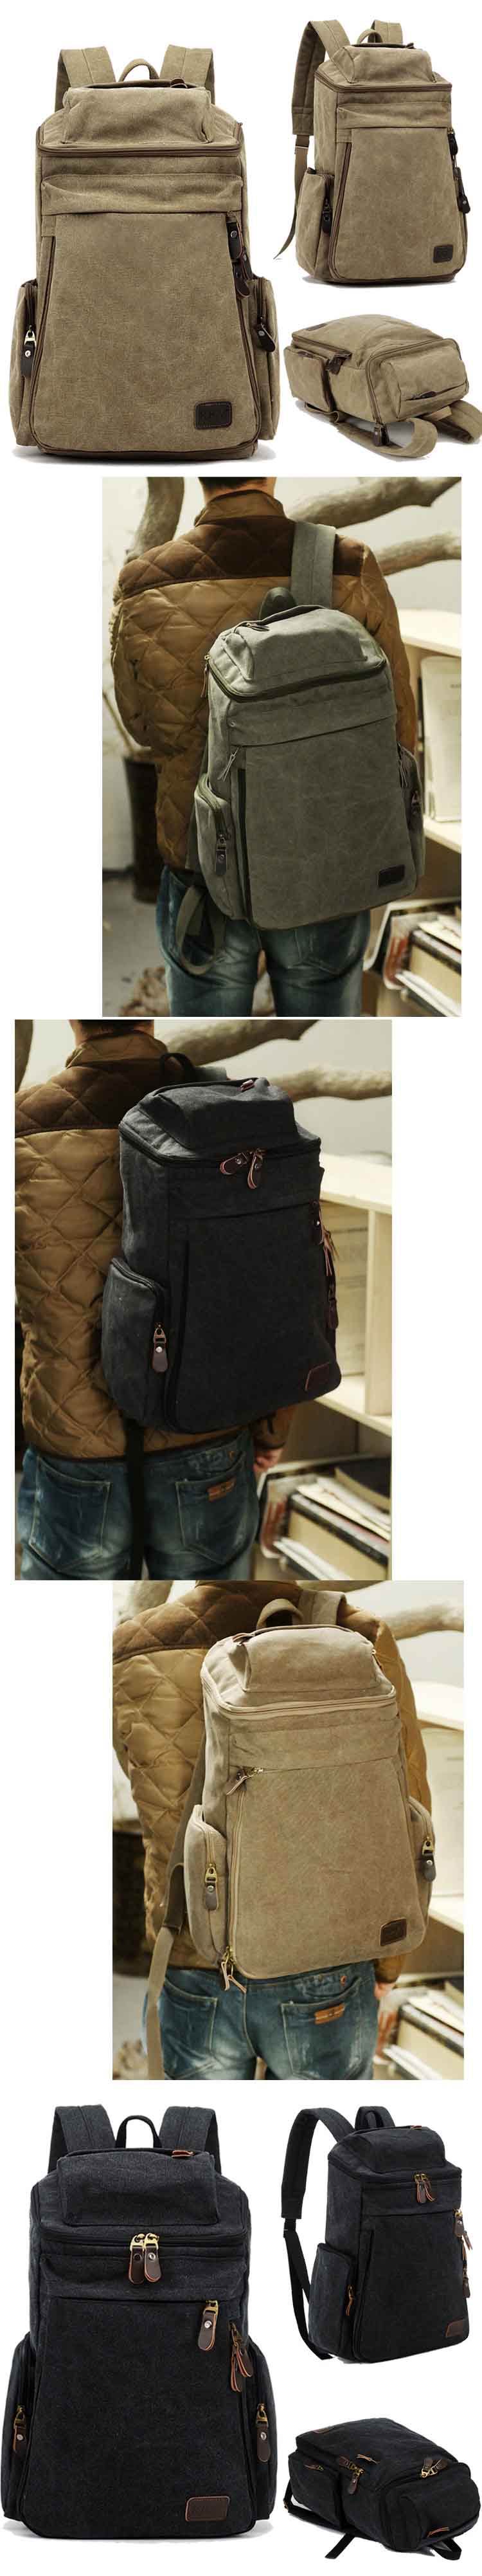 jual tas ransel laptop keren dan desain menarik , cocok untuk pria urban